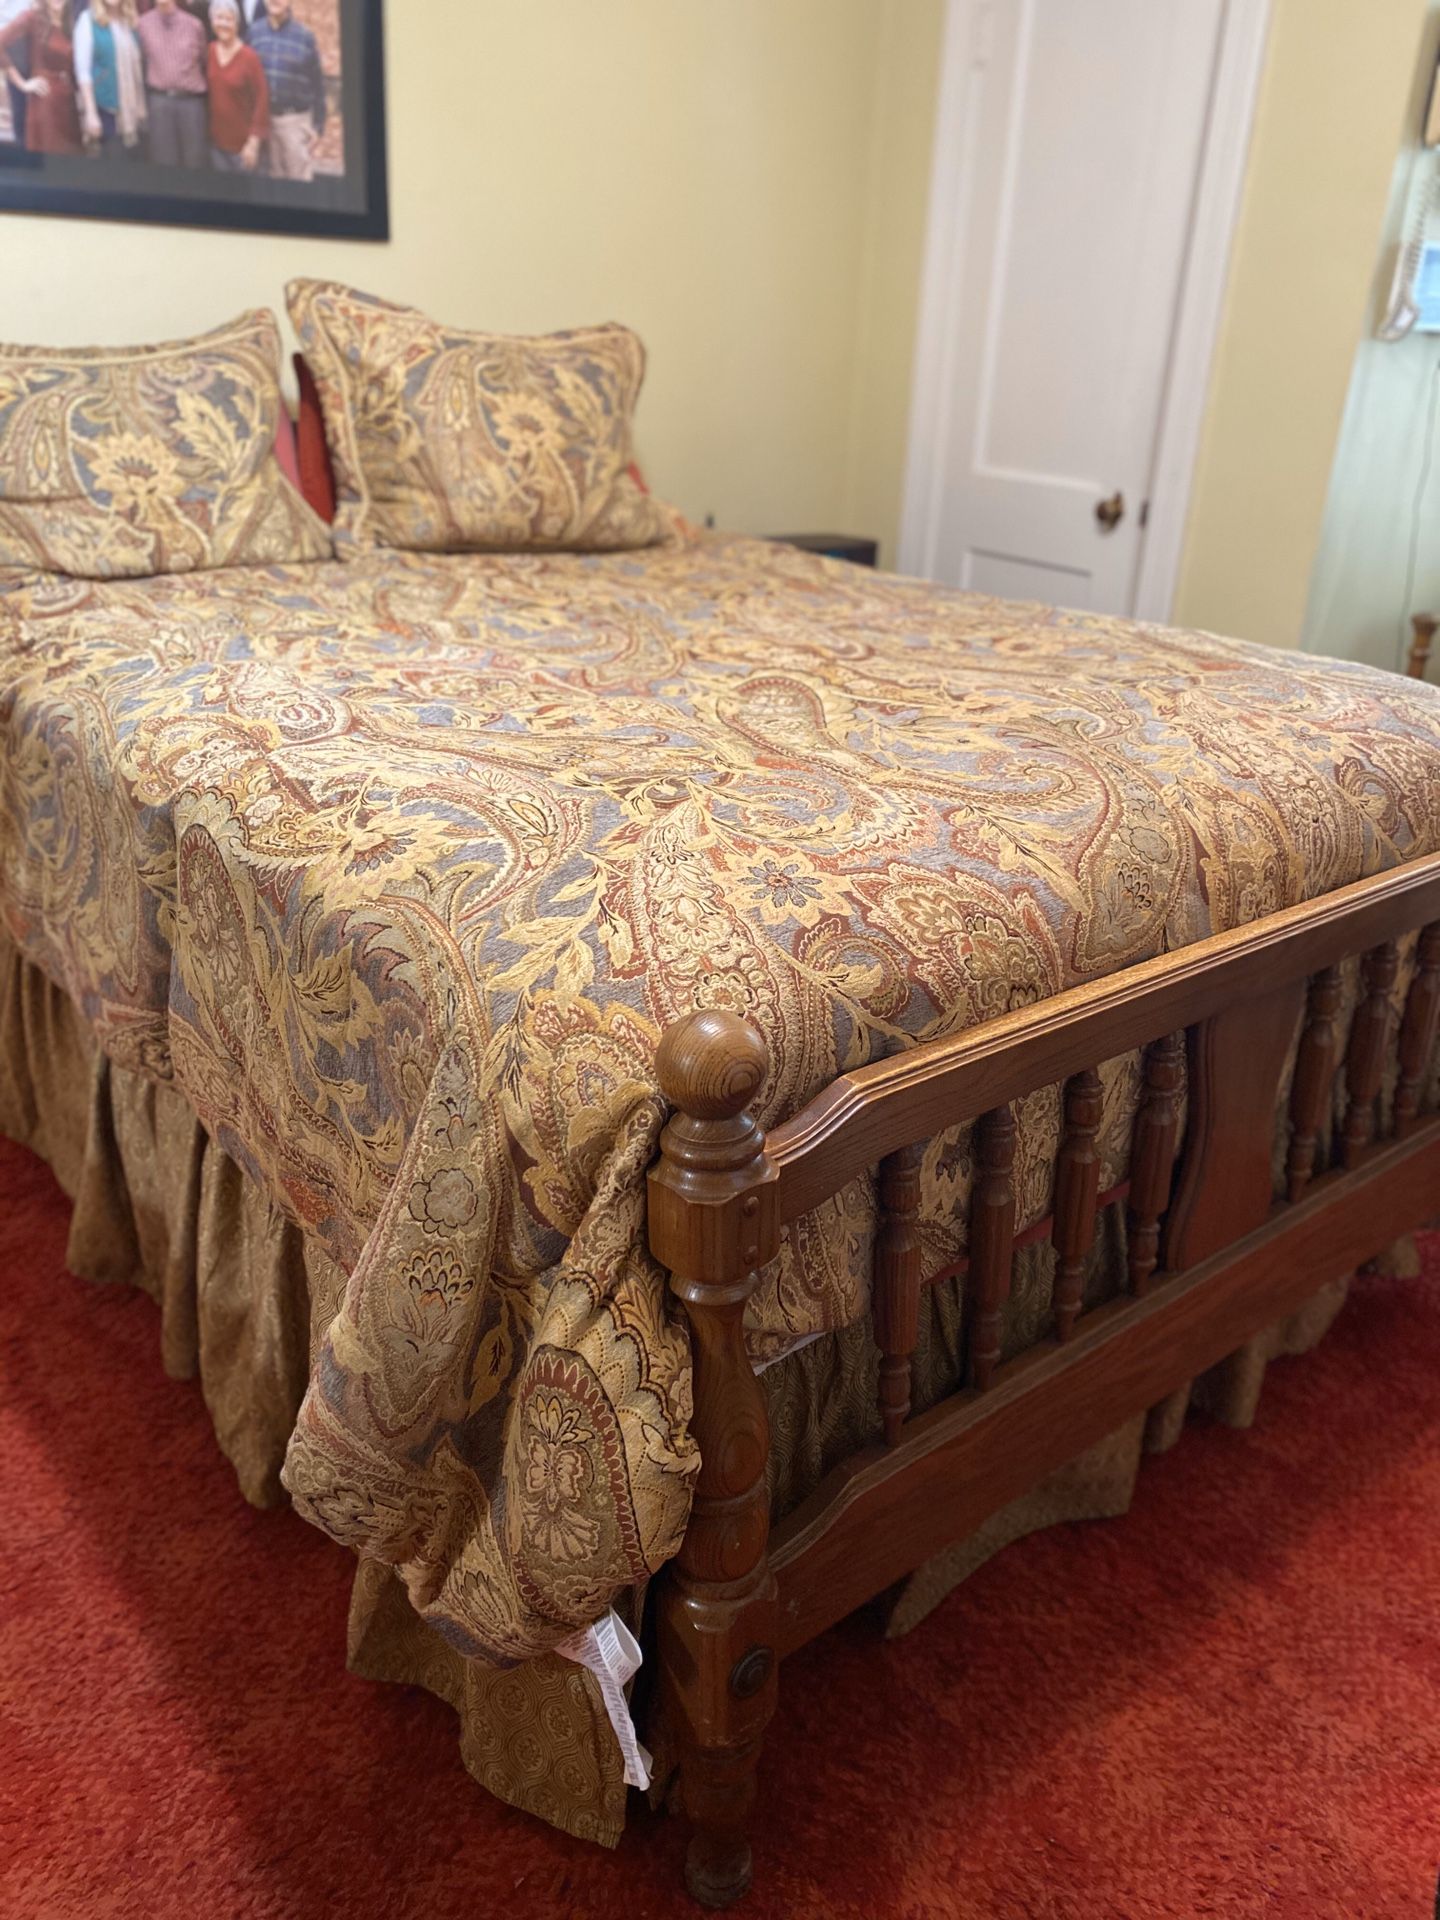 Queen size bedroom furniture set